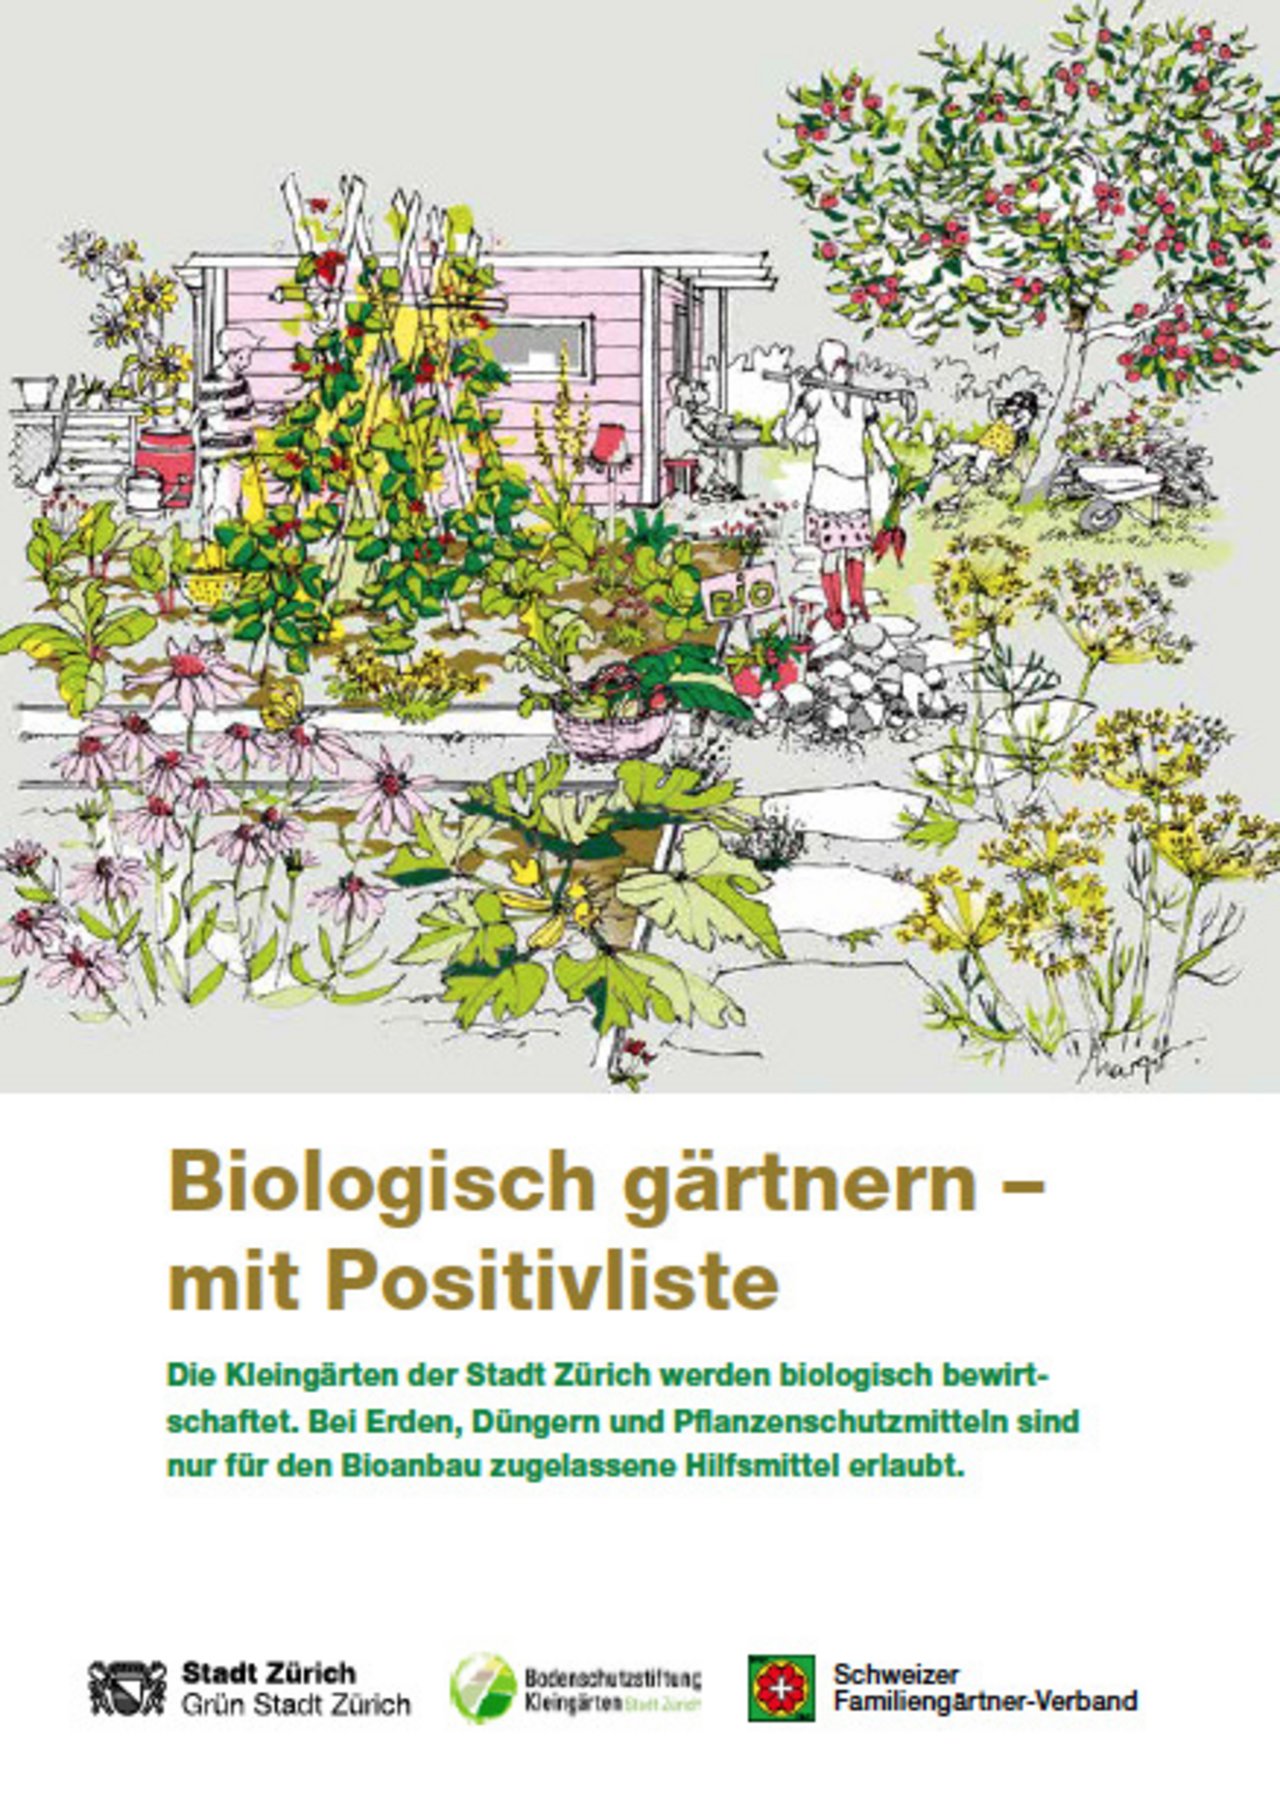 Grün Stadt Zürich hat in Zusammenarbeit mit dem FiBL eine Positivliste und eine bunt gestaltete Broschüre für biologisches Gärtnern herausgegeben. (Broschürencover Grün Stadt Zürich)